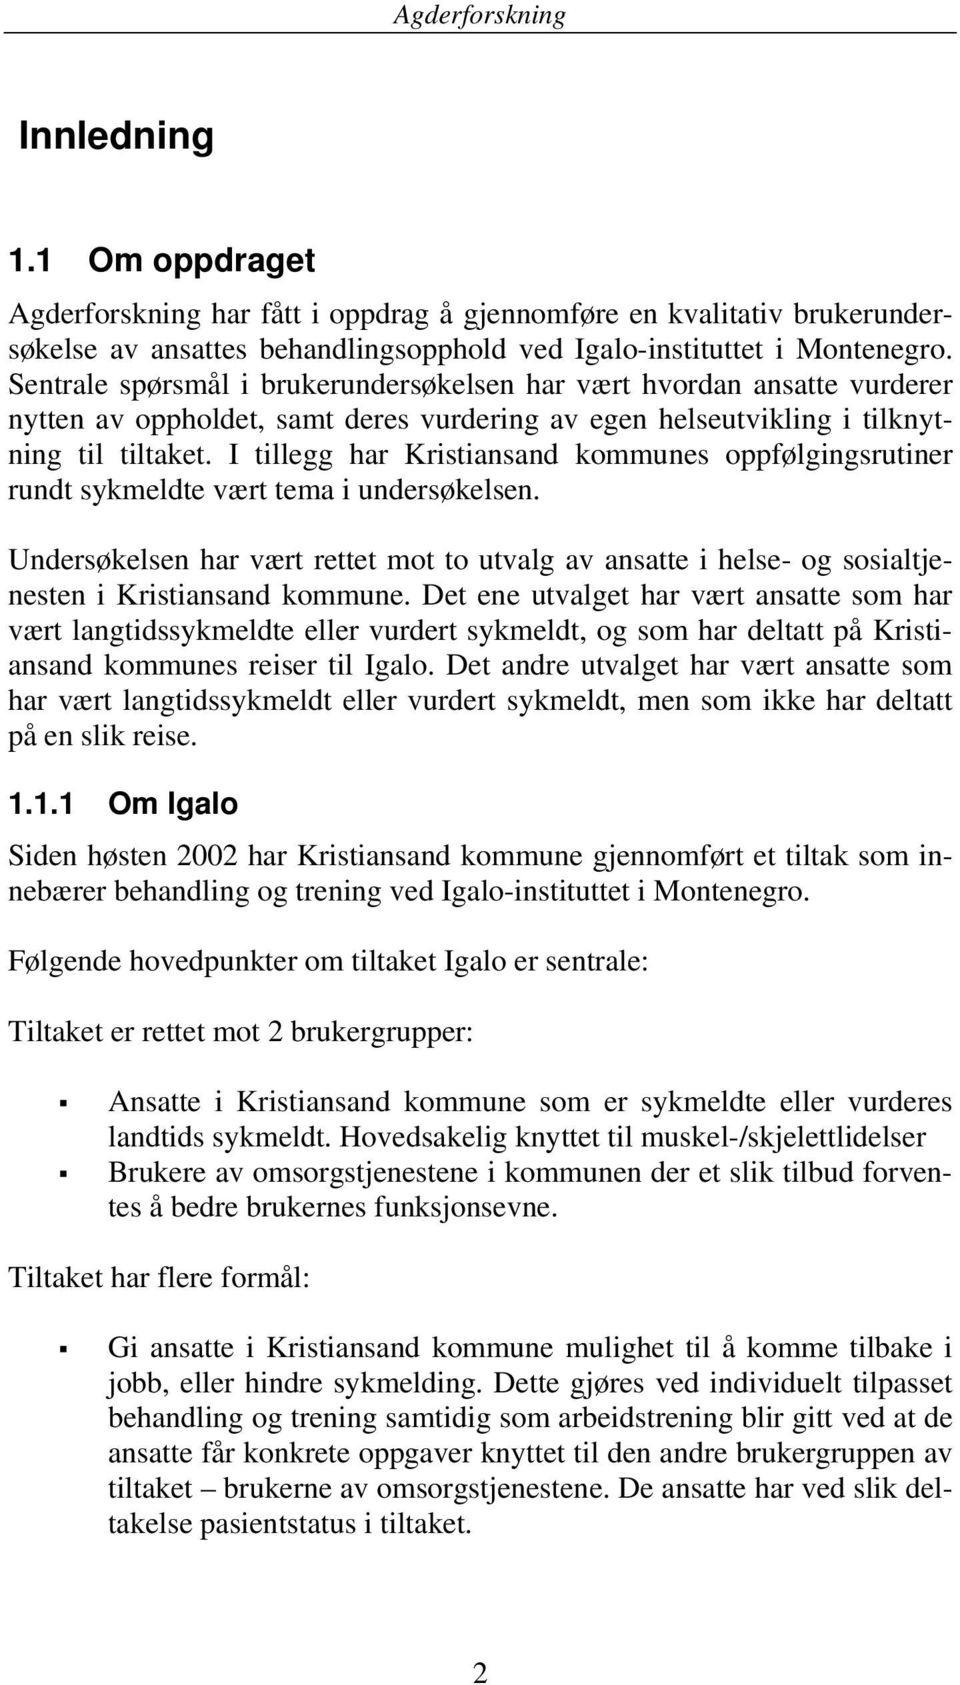 I tillegg har Kristiansand kommunes oppfølgingsrutiner rundt sykmeldte vært tema i undersøkelsen.